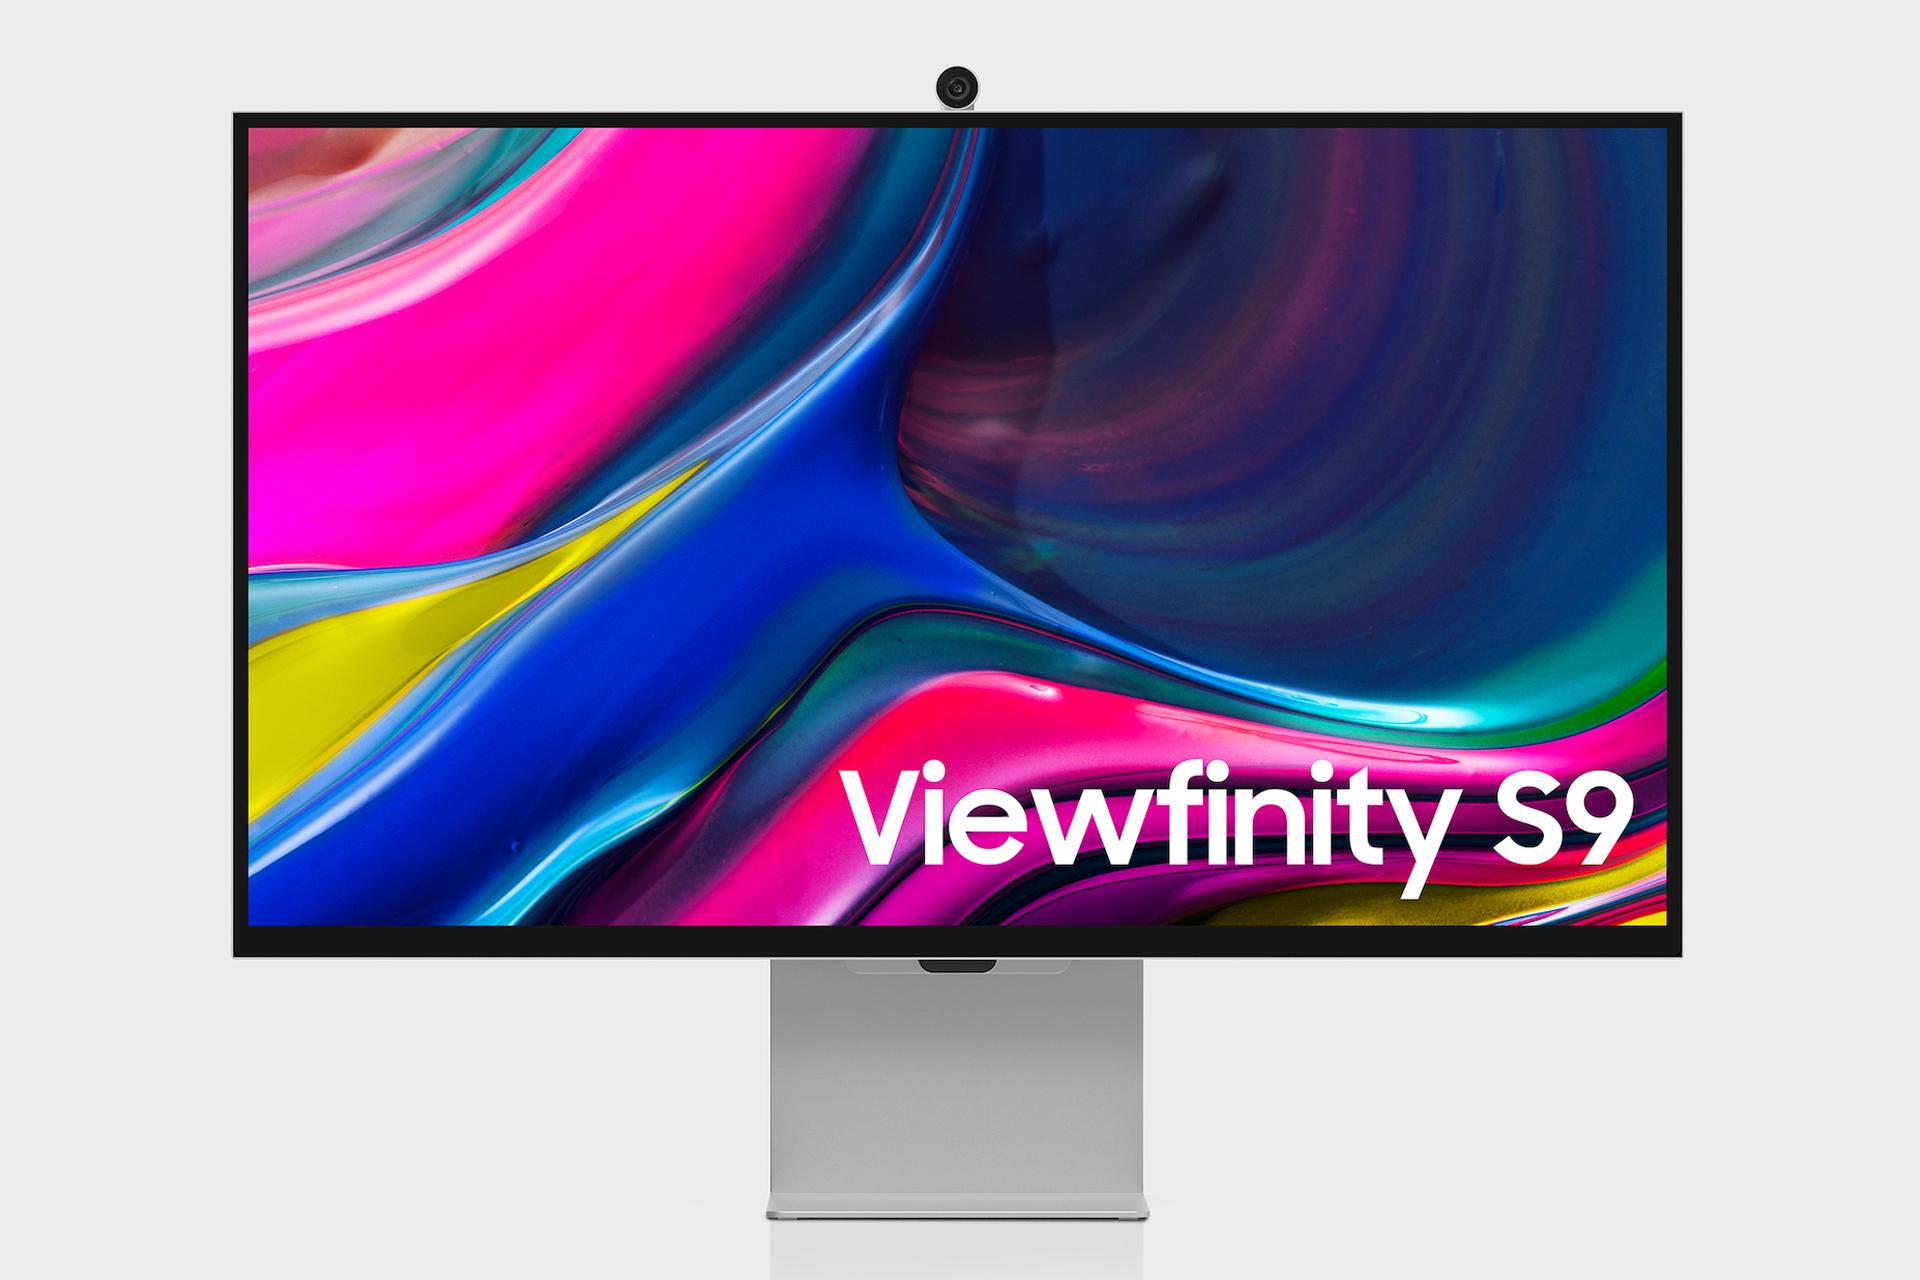 سامسونگ ViewFinity S9 معرفی شد؛ رقیب اصلی استودیو دیسپلی